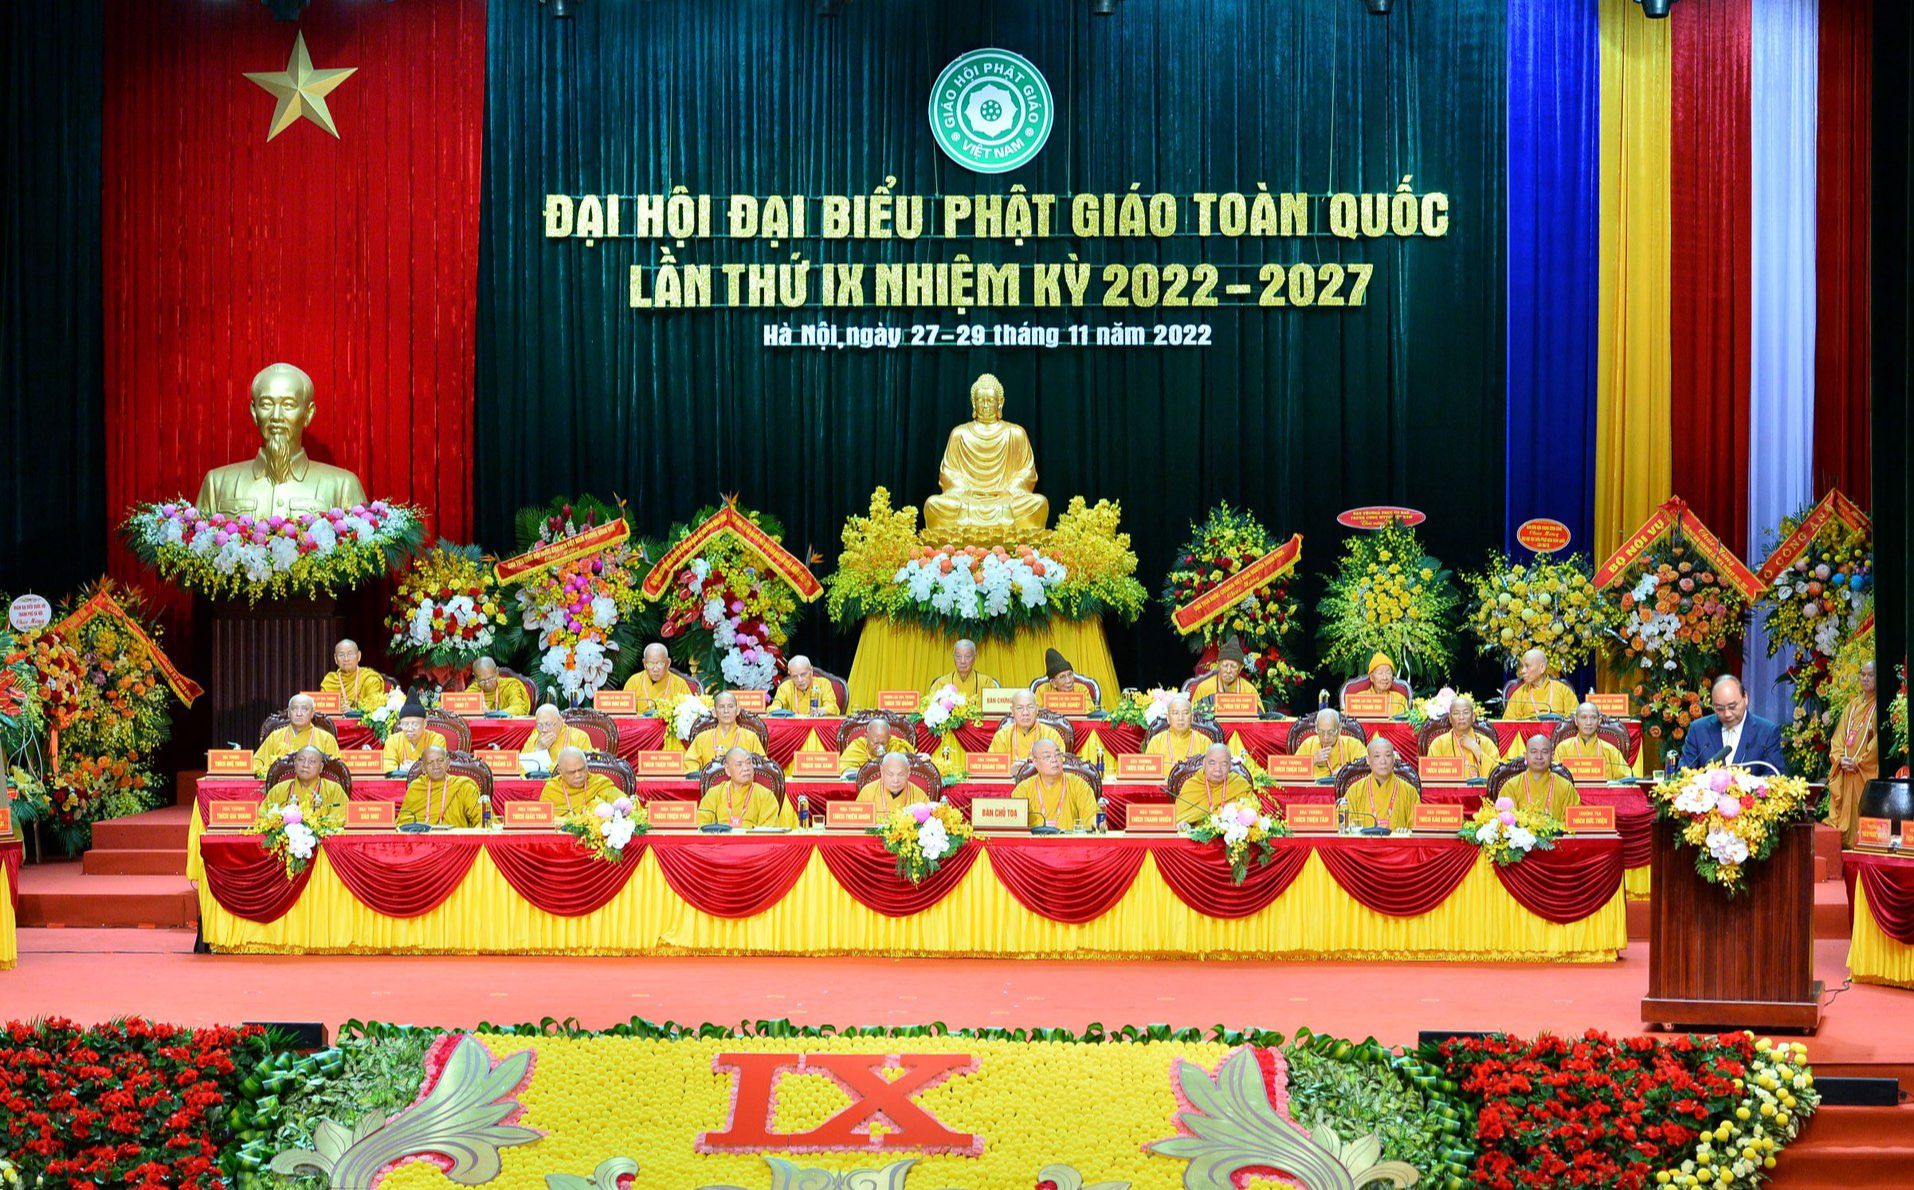 Đại hội Phật giáo toàn quốc sẽ tu chỉnh Hiến chương, bàn về tài sản riêng của Tăng, Ni - Ảnh 3.